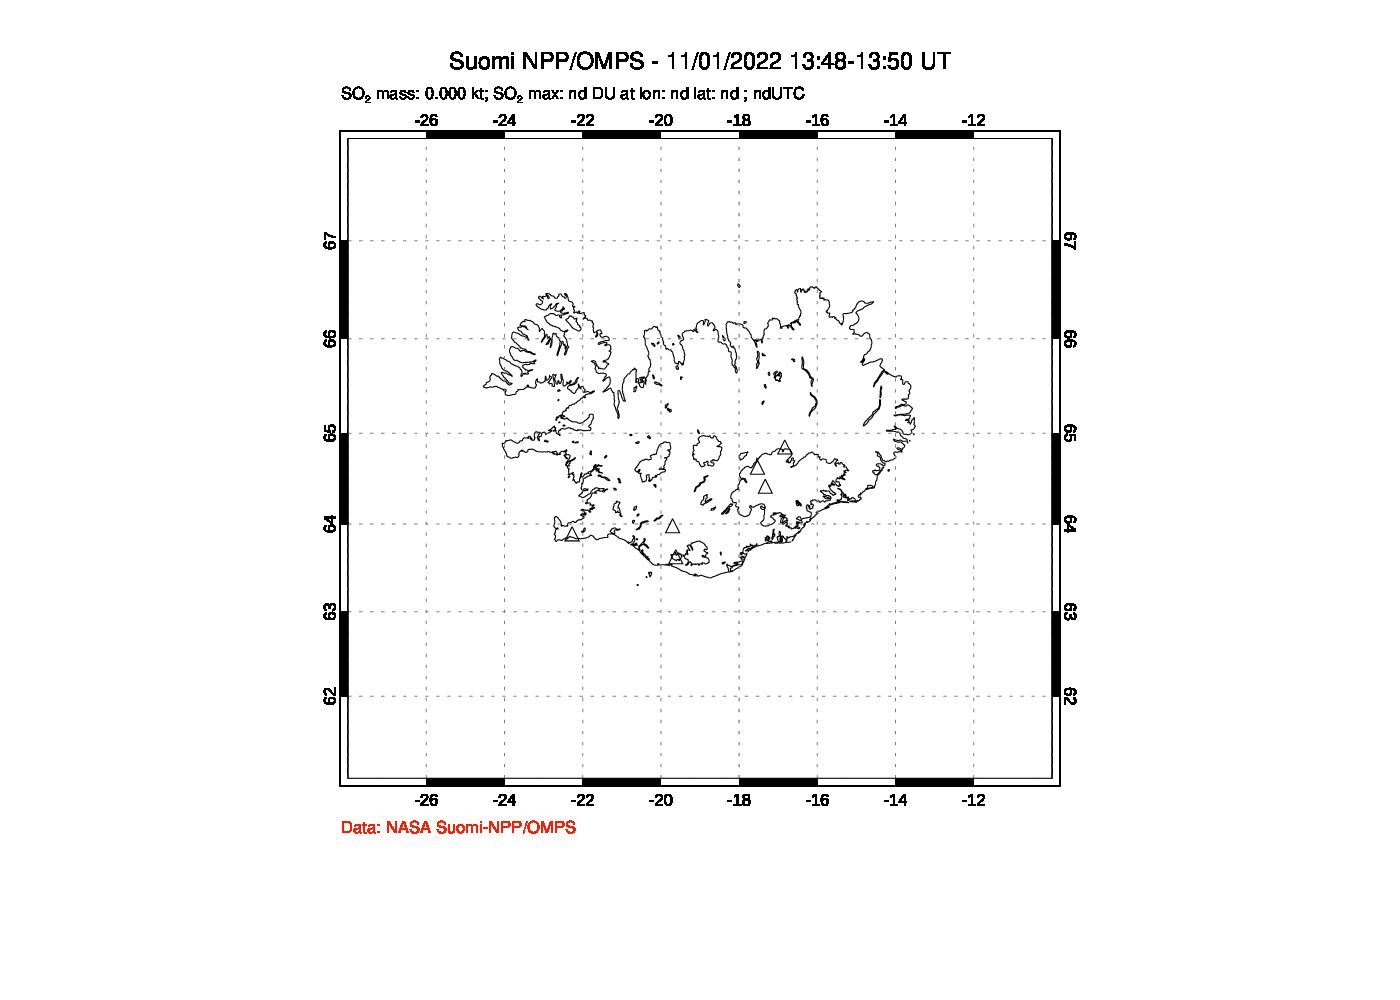 A sulfur dioxide image over Iceland on Nov 01, 2022.